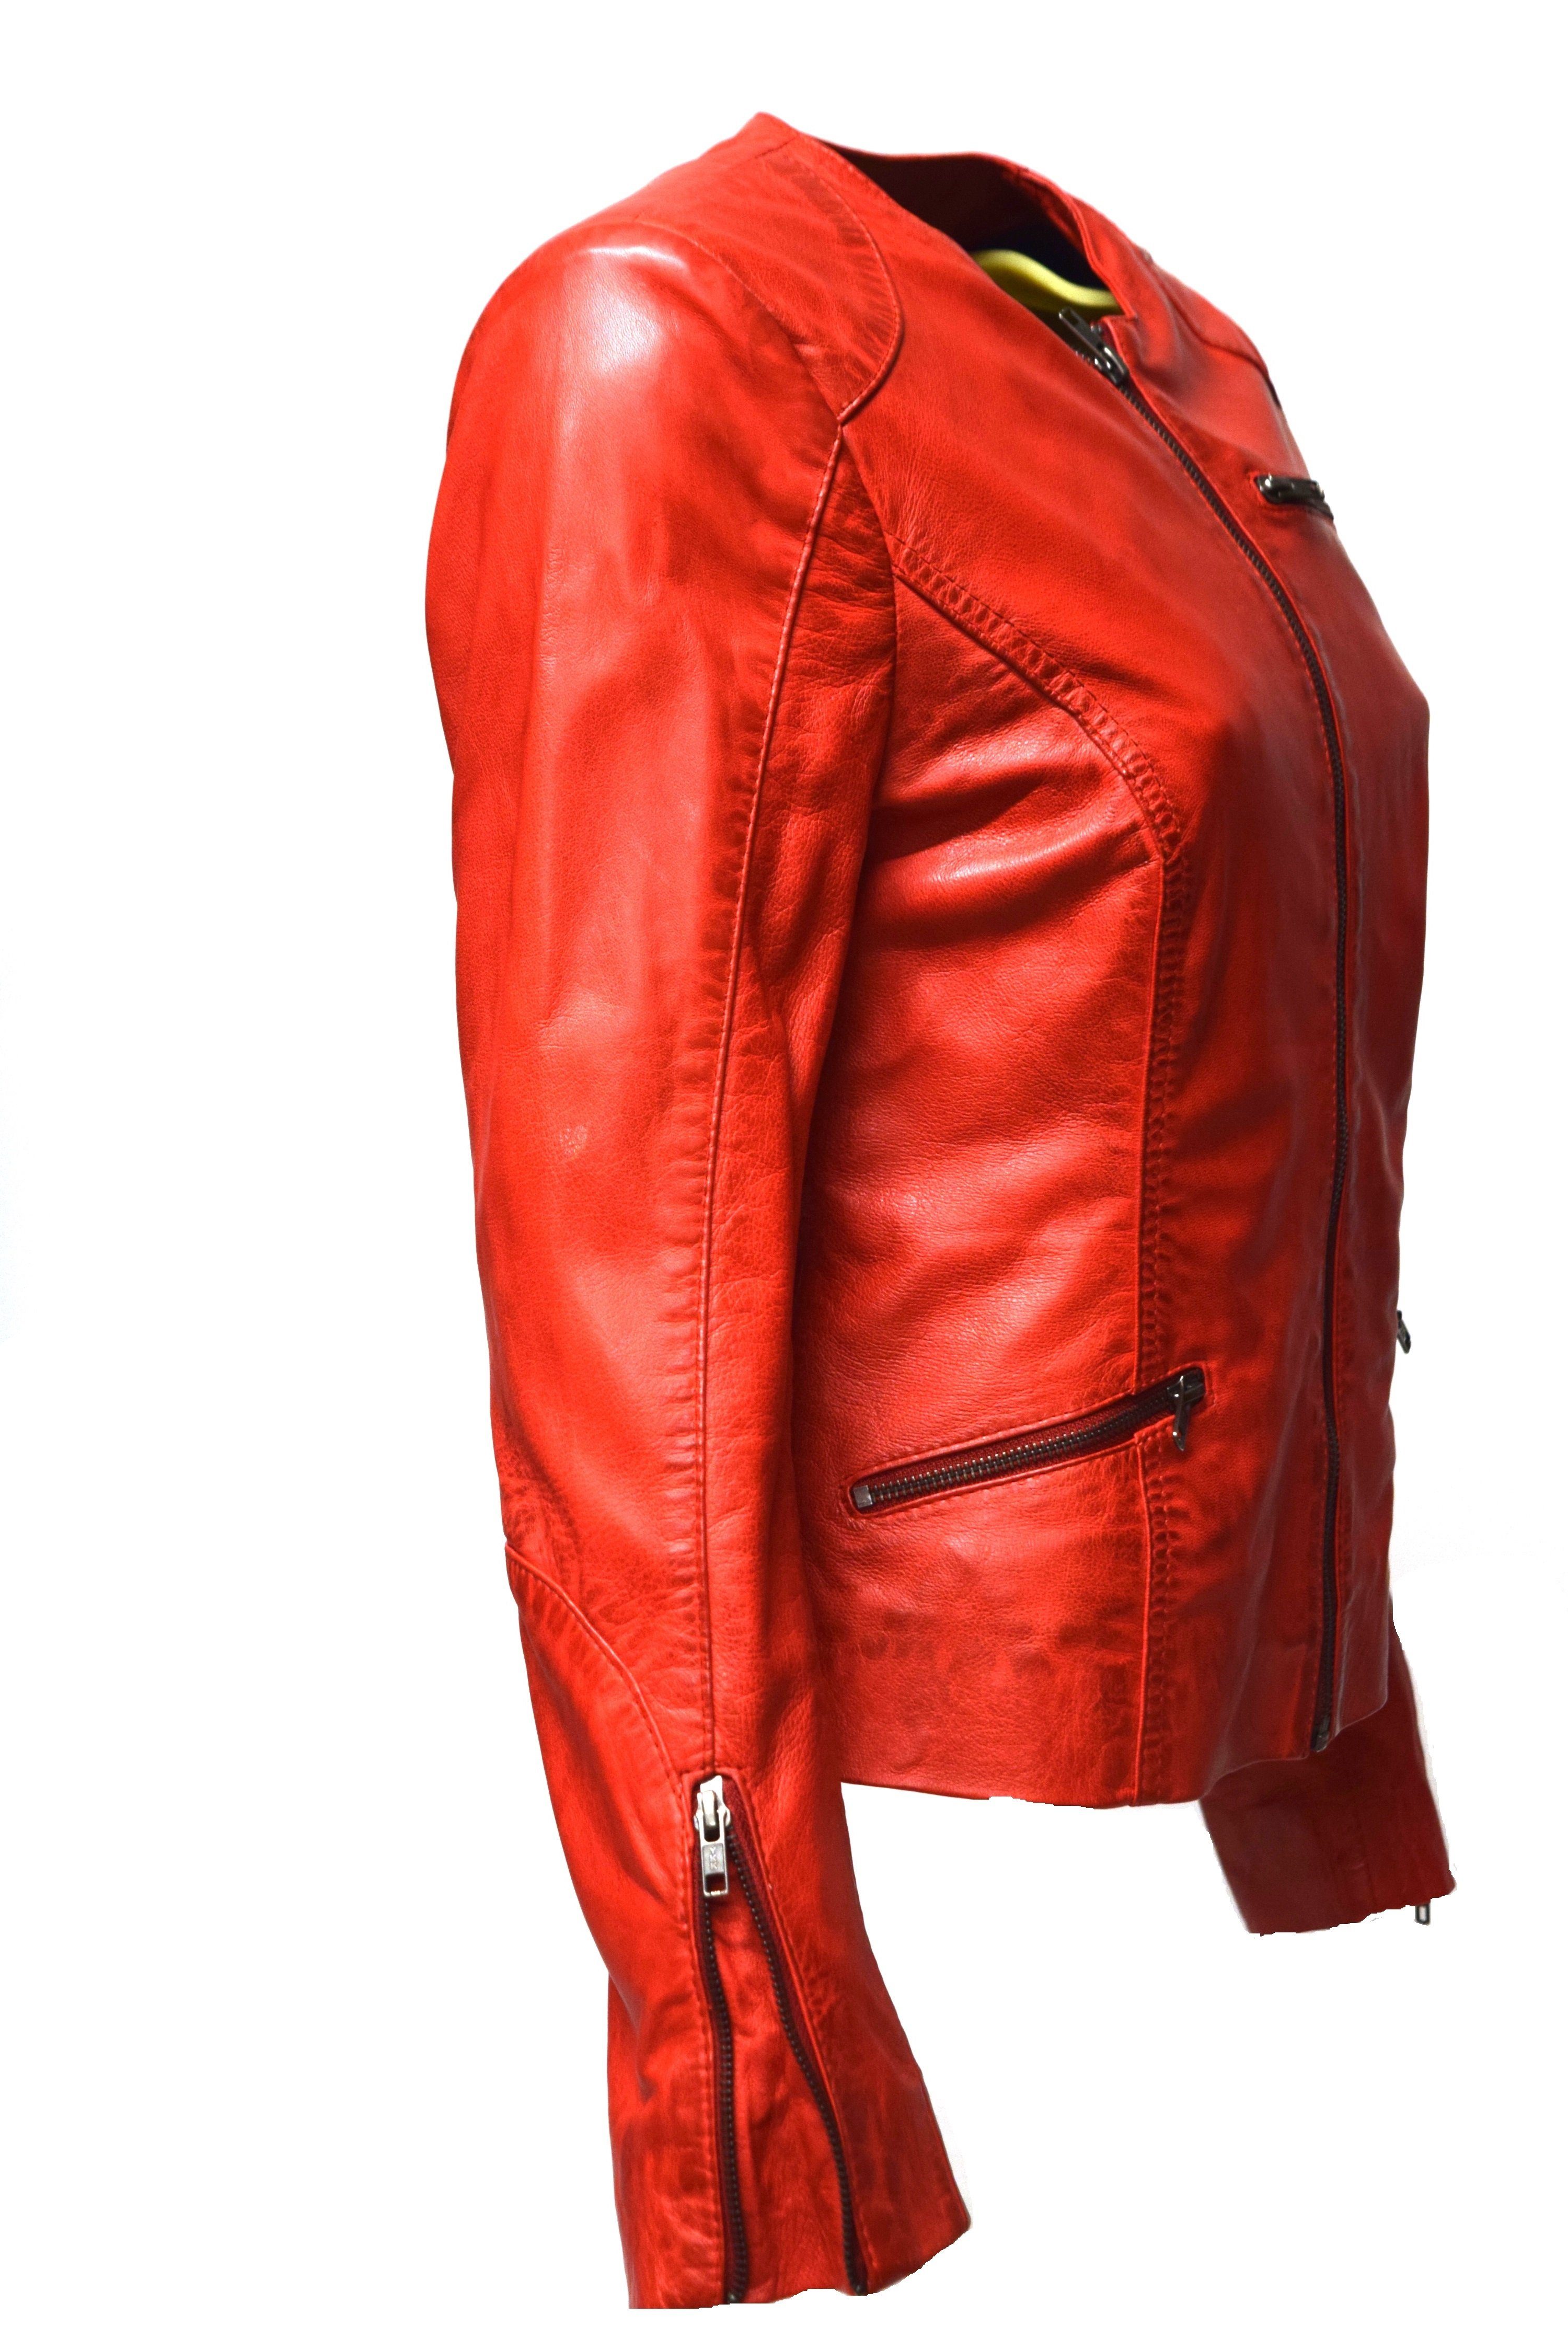 Zimmert Leather Lederjacke Kim Kragenlos, leichtes rot weiches Leder und